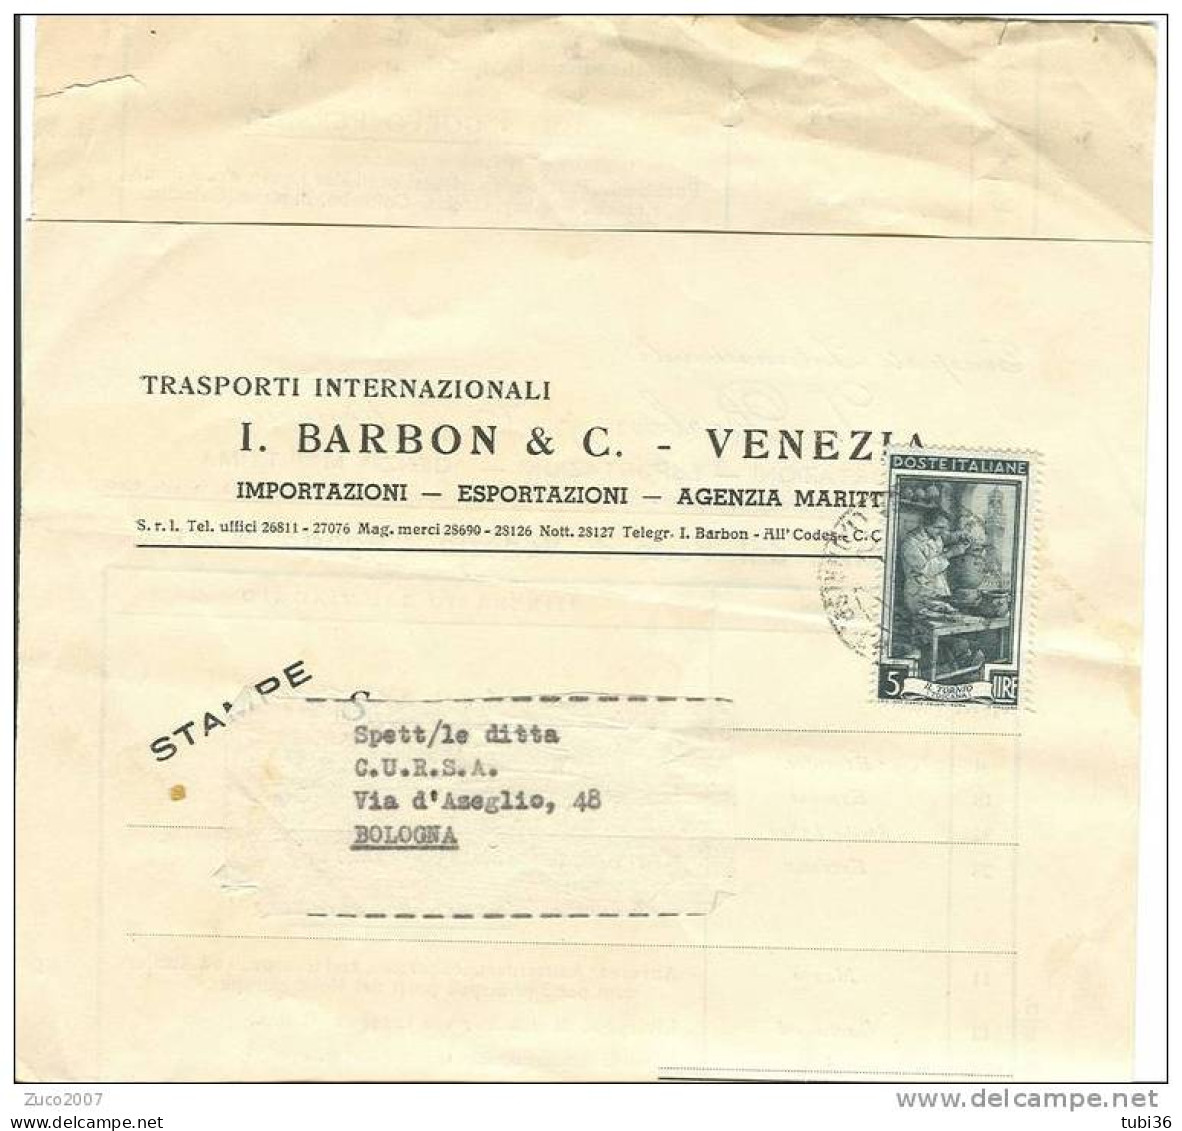 BARBON E C. - VENEZIA - TRASPORTI INTERNAZIONALI - CALENDARIO PARTENZE DAL PORTO DI VENEZIA  1952. - Wereld